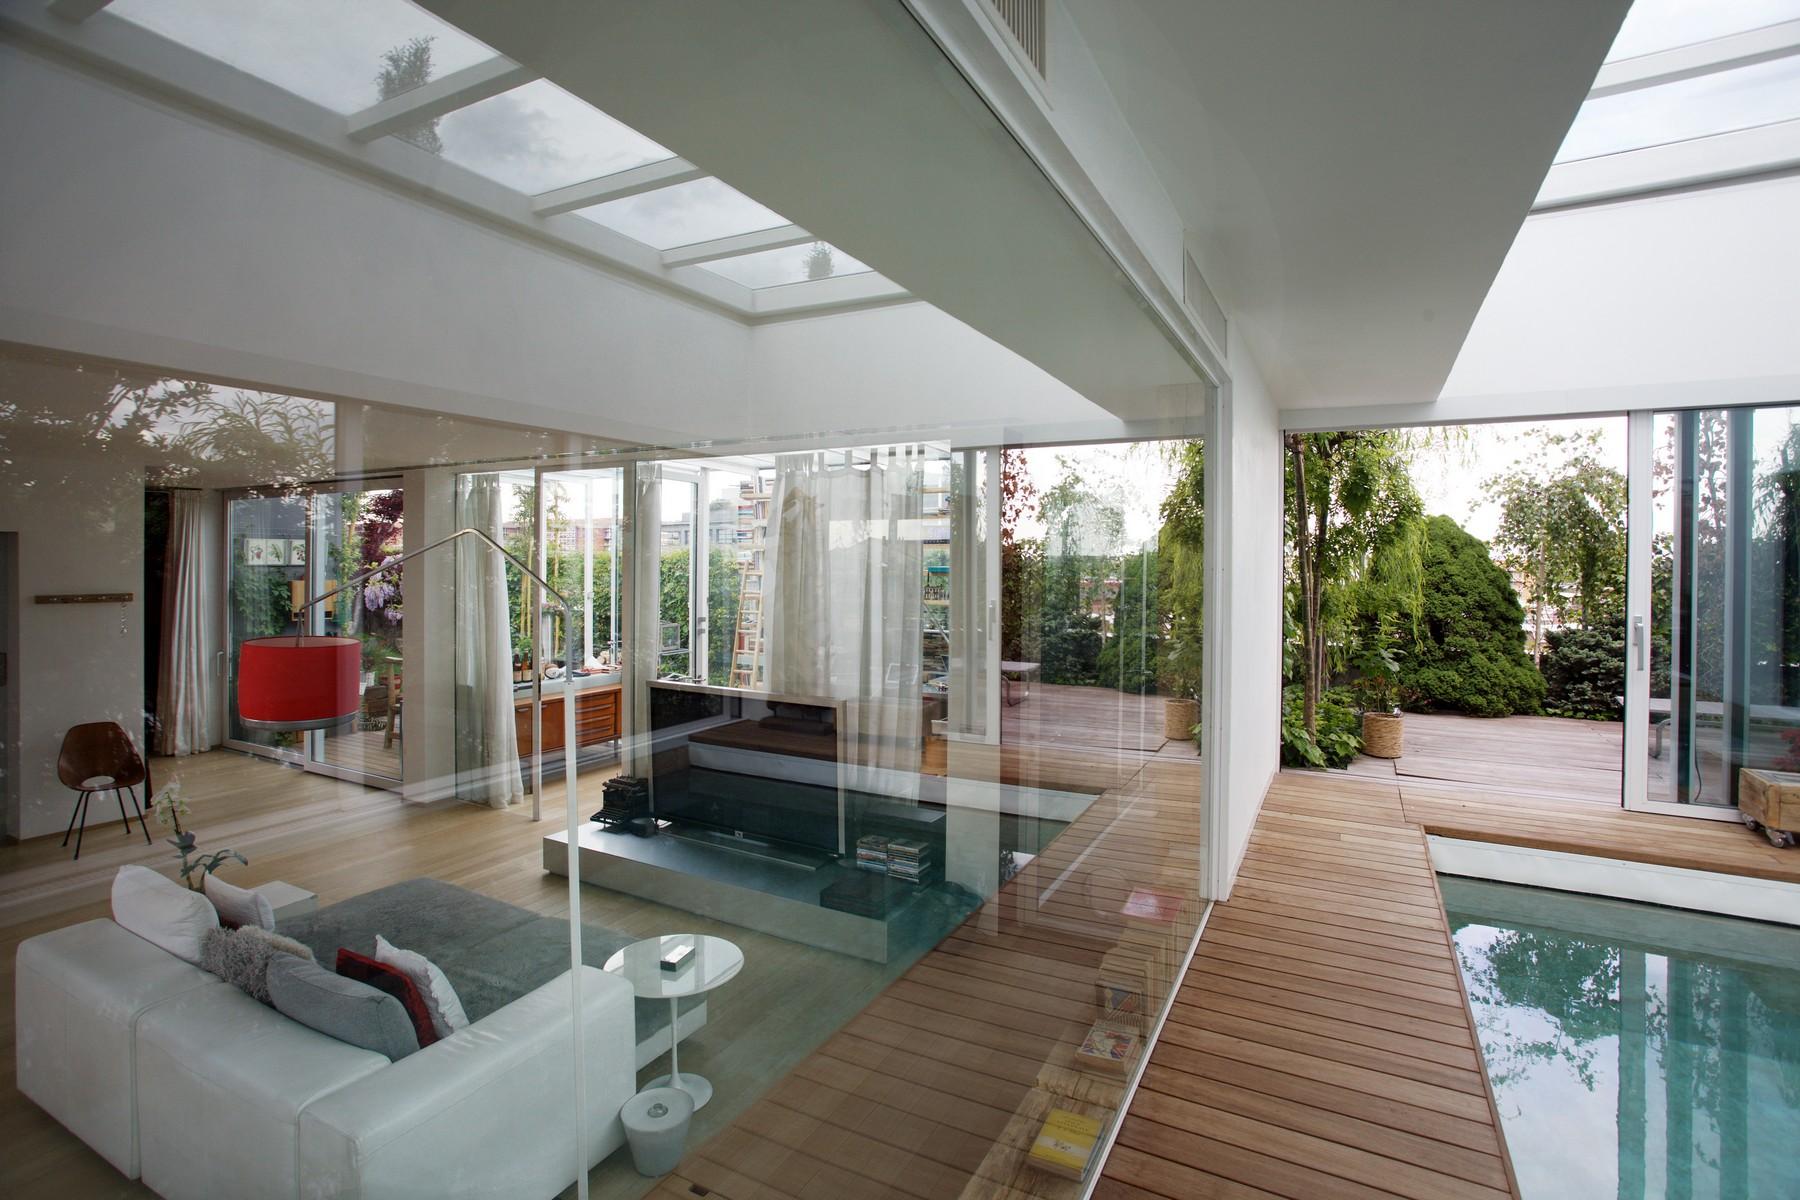 Incantevole loft di 350 mq con piscina privata e giardino pensile - 10